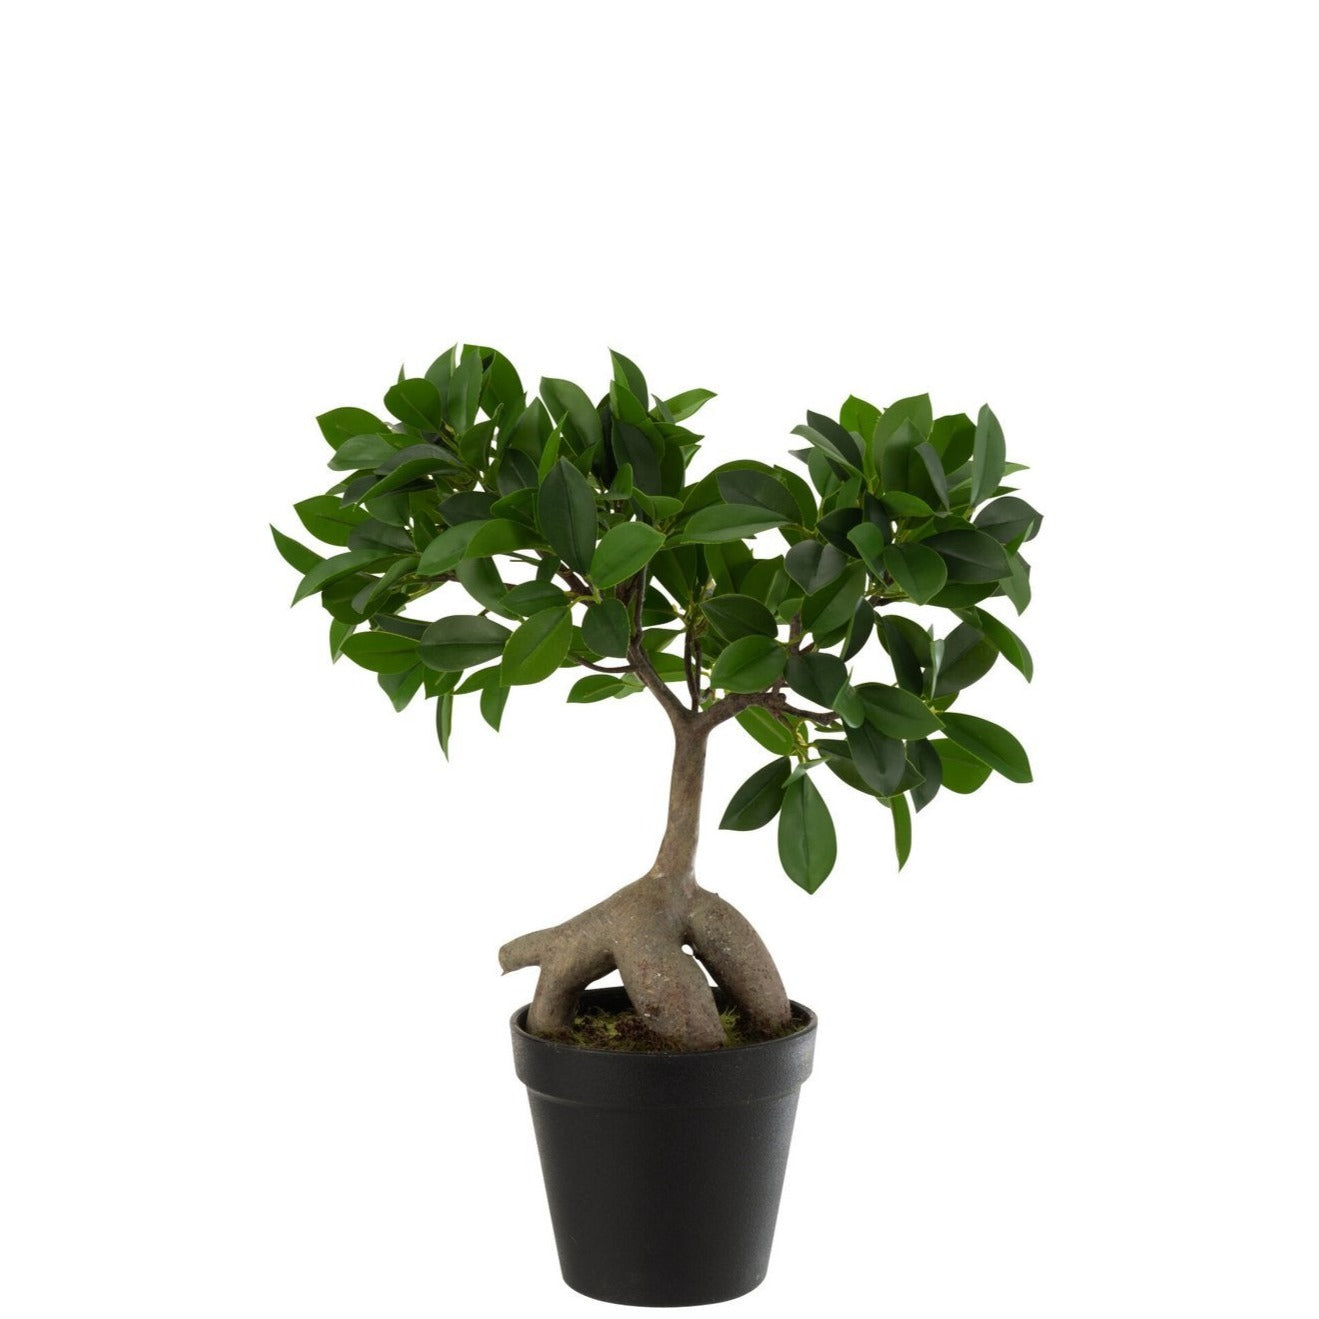 J-Line Chinesischer Feigen Ficusbaum im Topf Kunststoff grün/schwarz klein